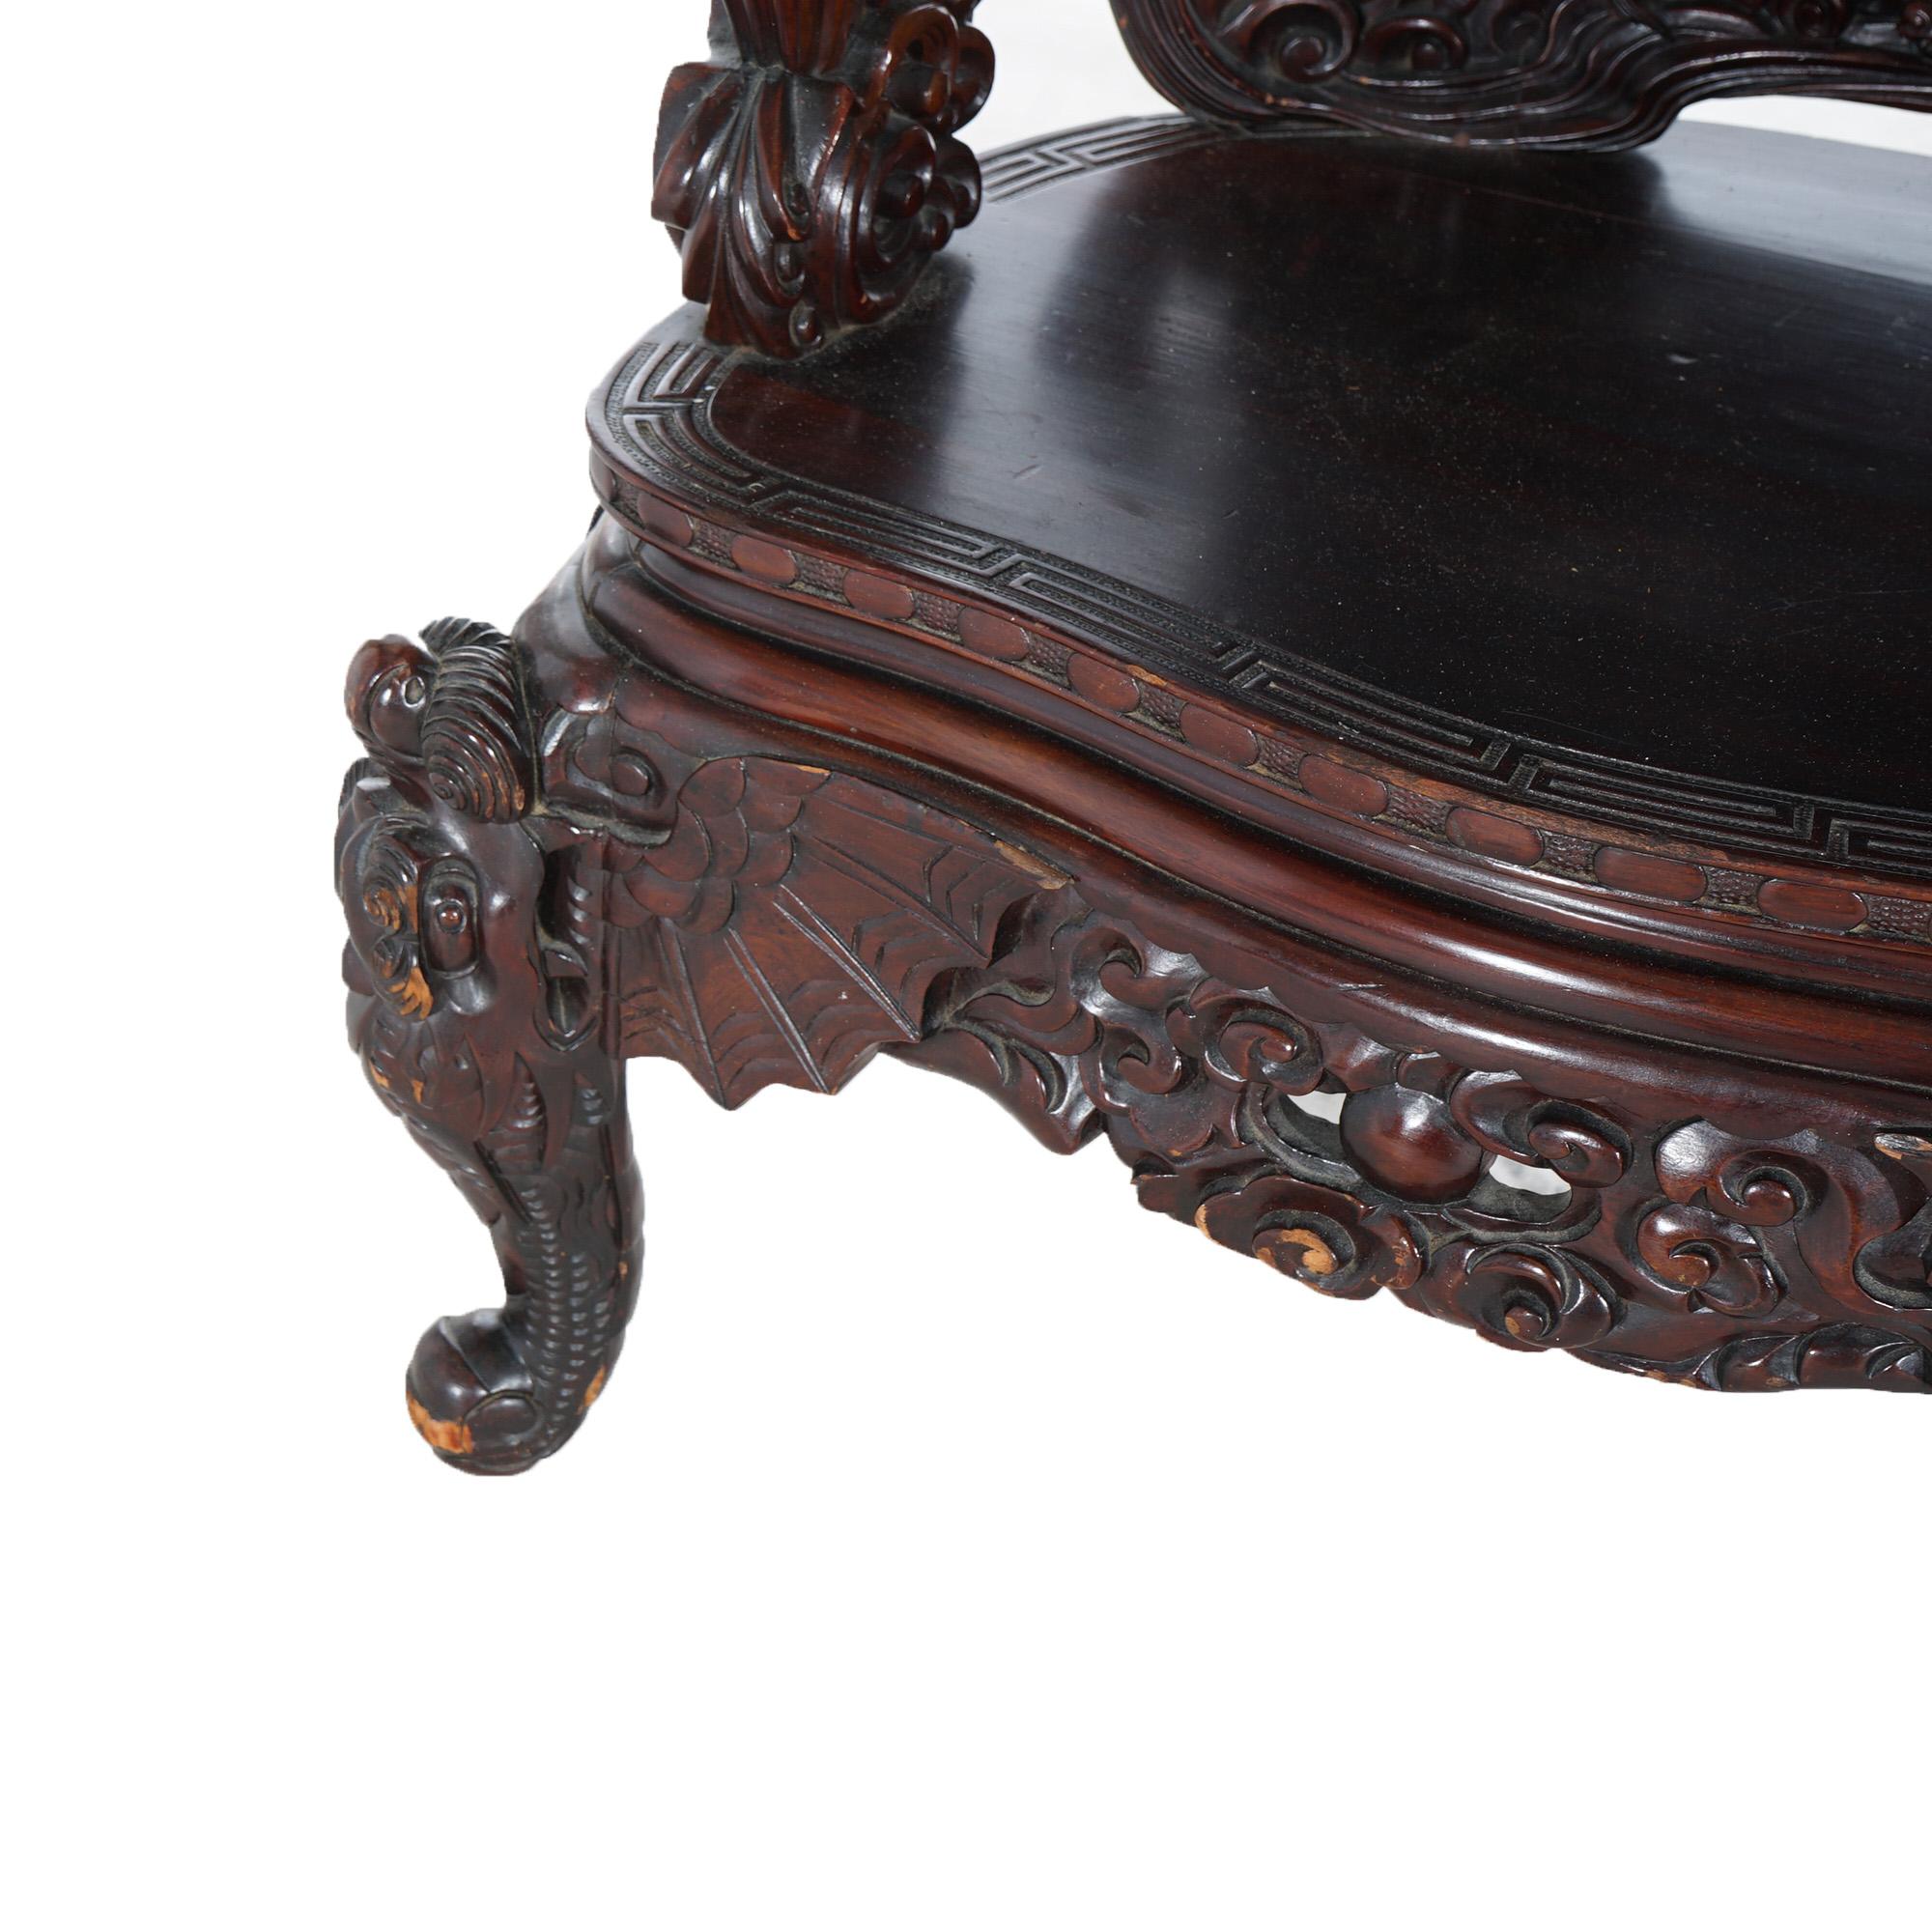 Ancienne chaise à trône en palissandre chinois profondément sculpté avec dragons C1920

Dimensions - 48.25 